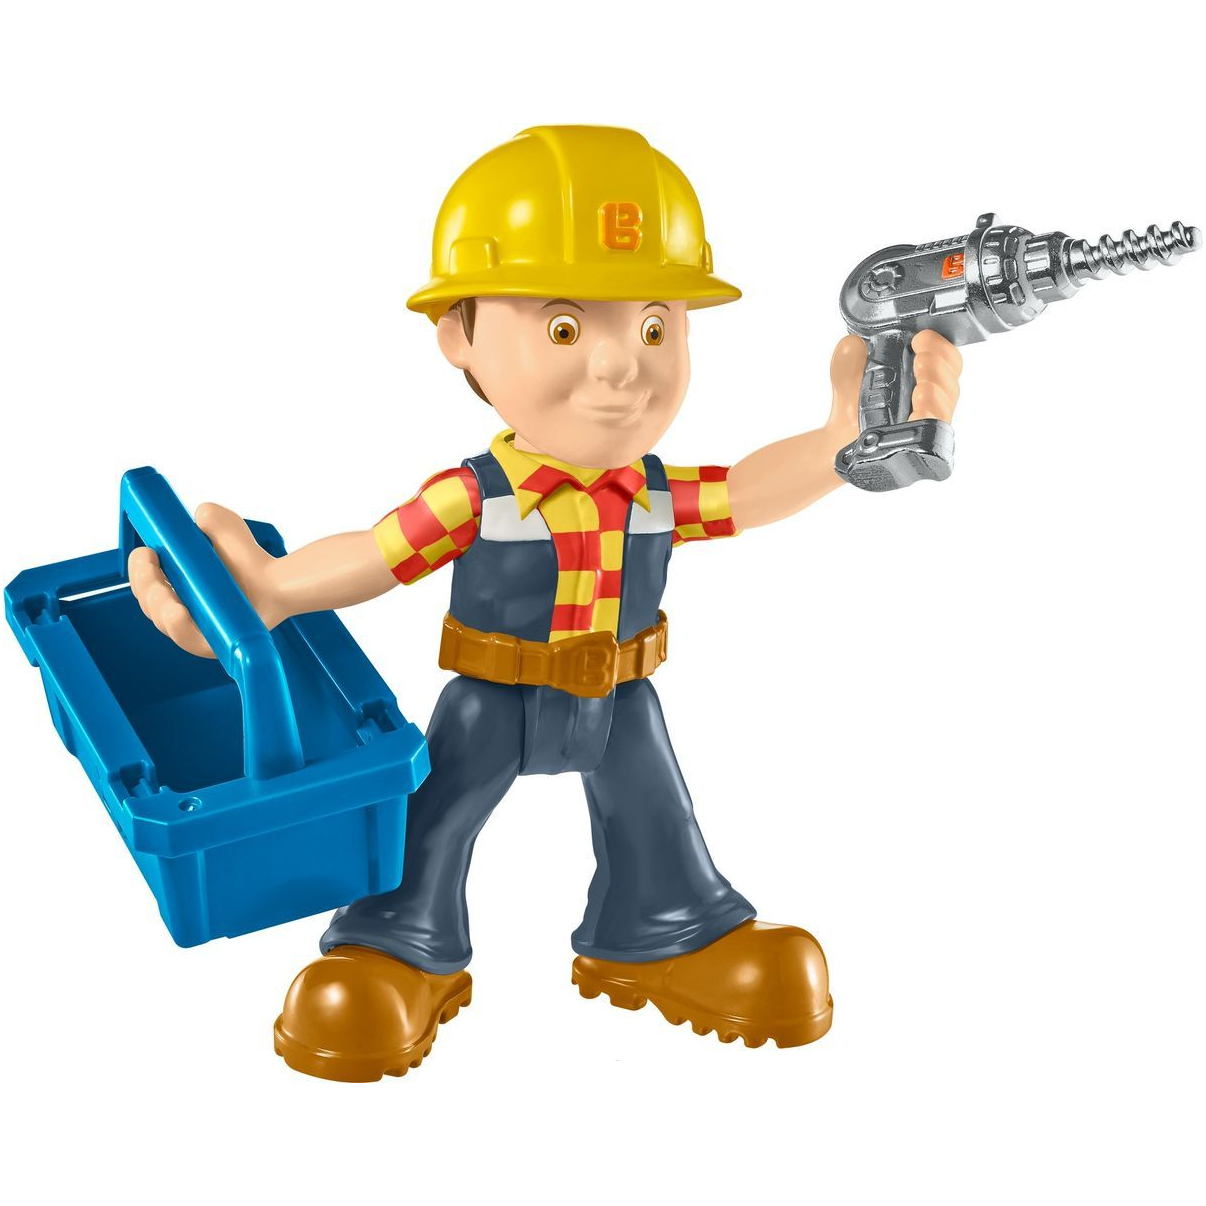 Игровой набор Мини-фигурка Боб-строитель с аксессуарами